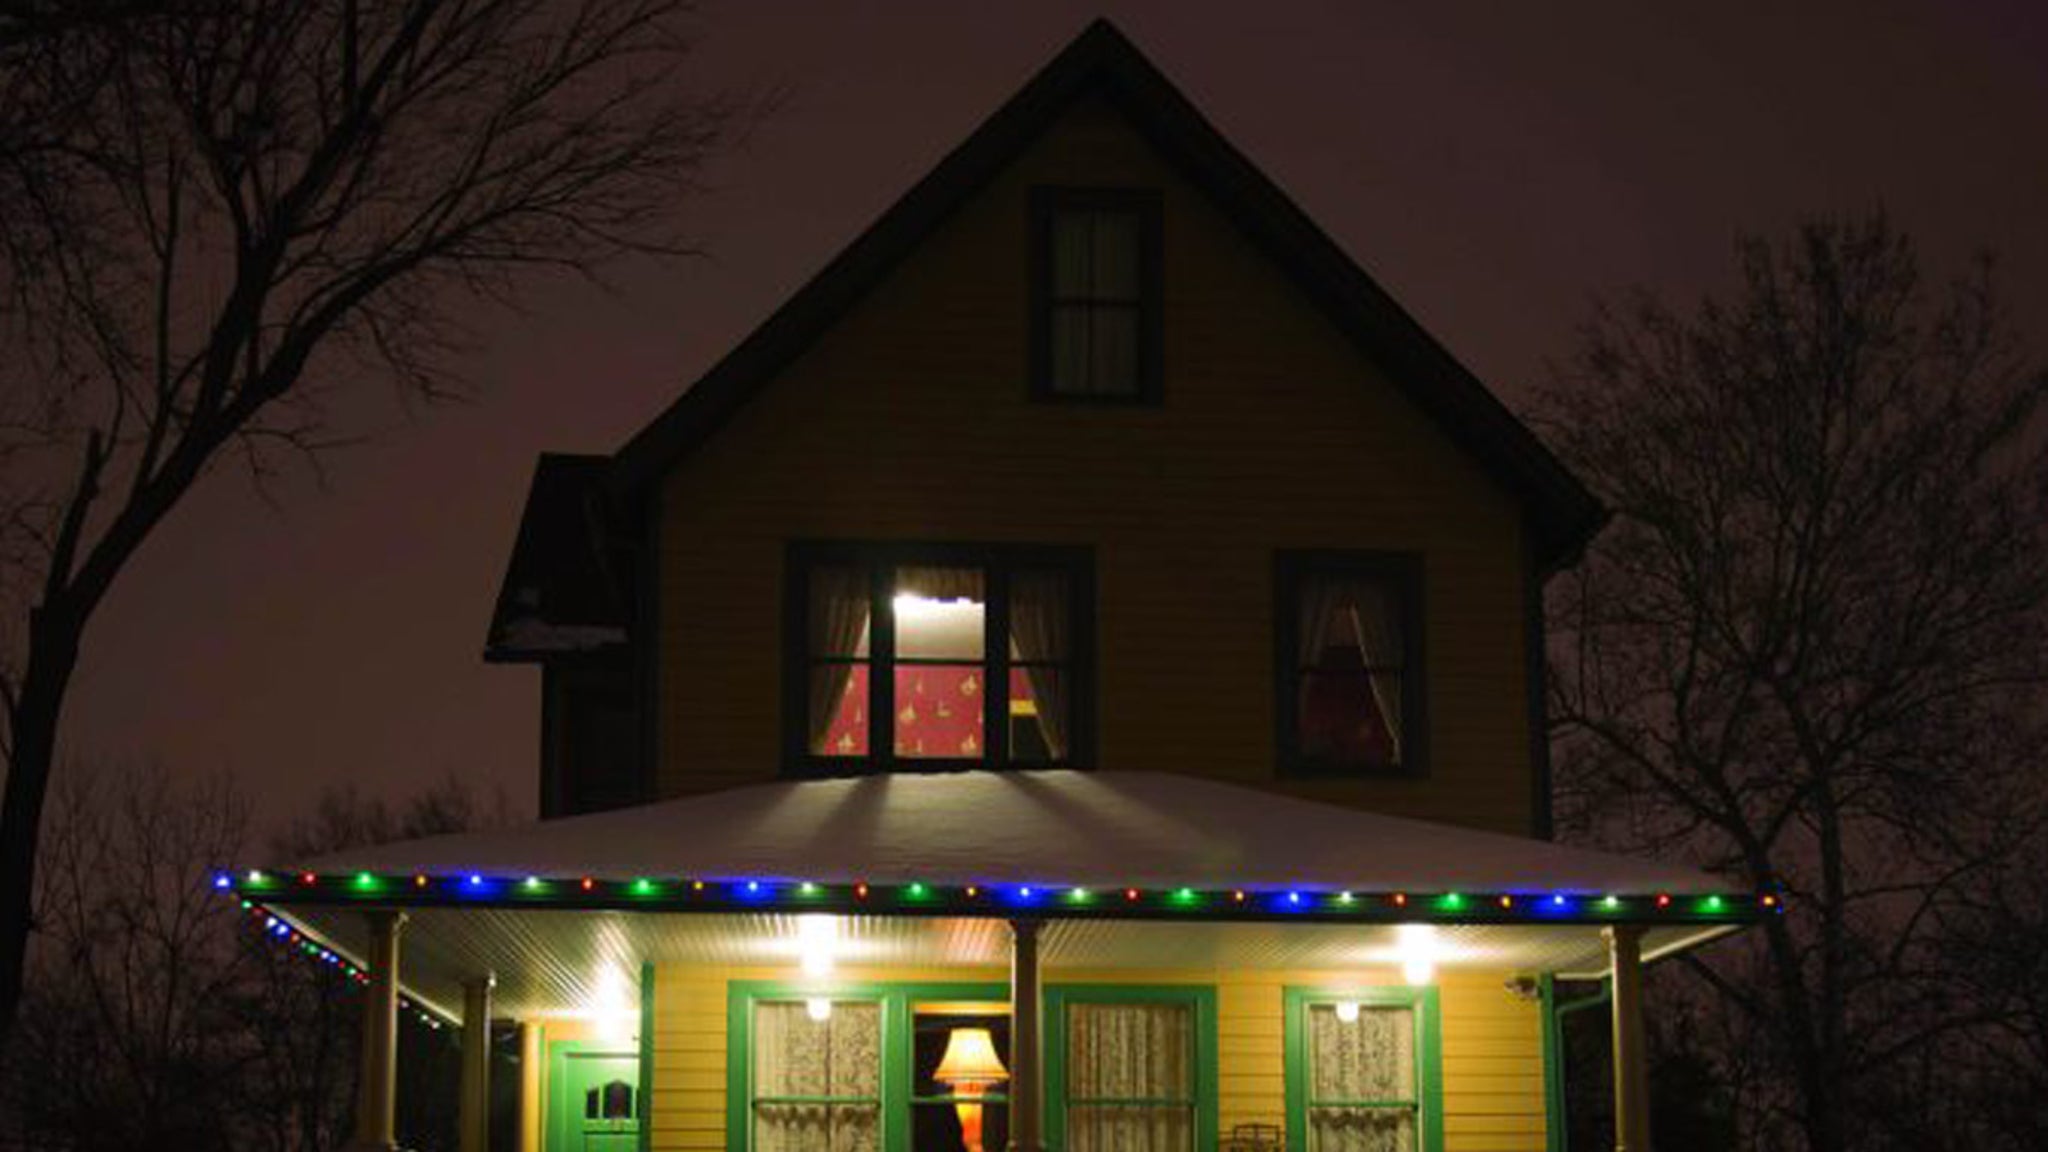 Les acteurs de “A Christmas Story” intéressés par l’achat d’une maison emblématique du cinéma